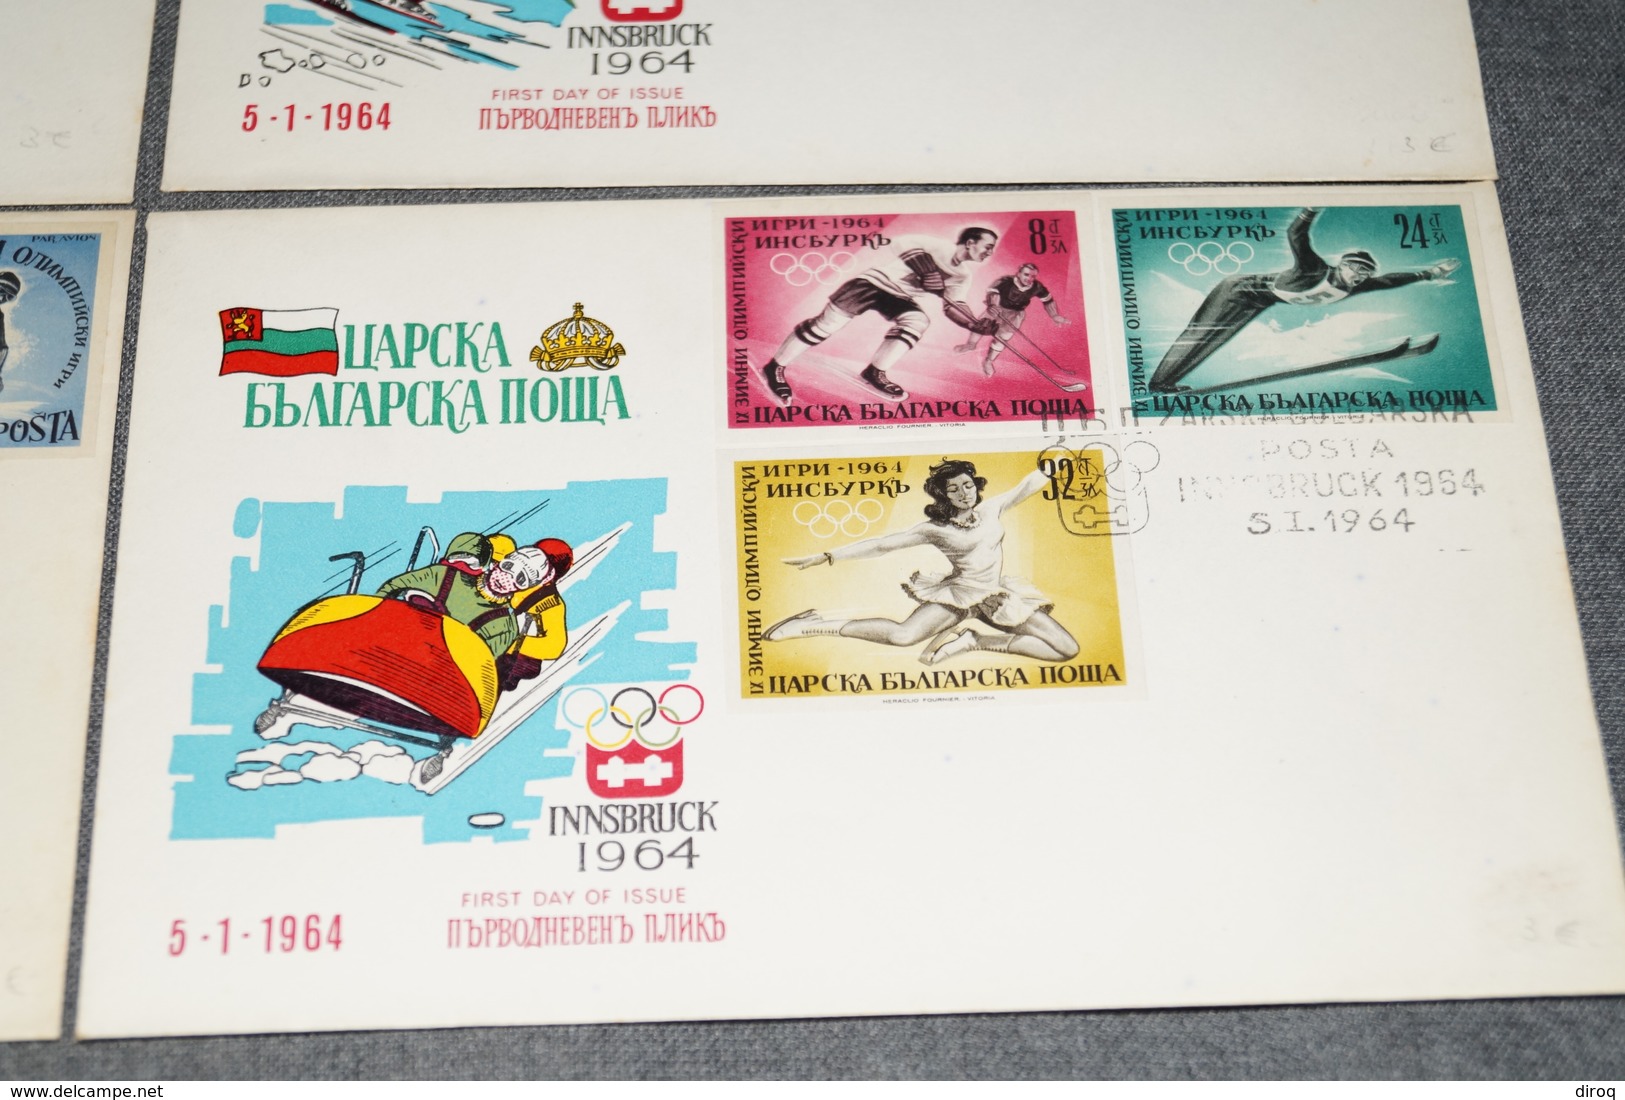 lot de 6 courrier avec timbres Russes pour les jeux olympiques Hivers 1964,Innsbruck,collection